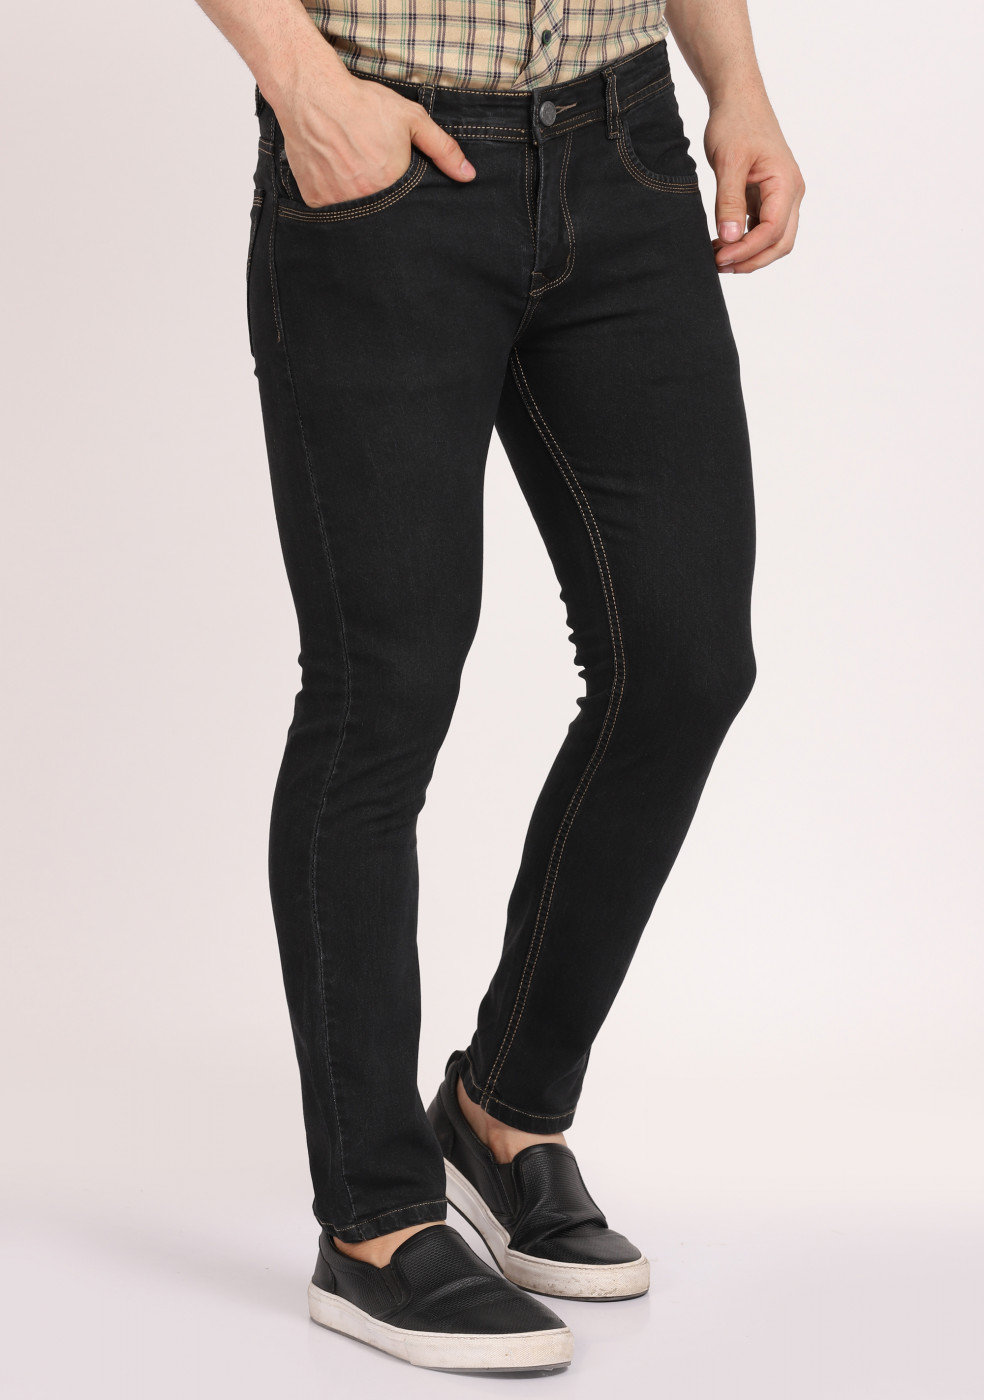 ASHTOM Stylish Black Jeans Lightweight Regular Fit For Men